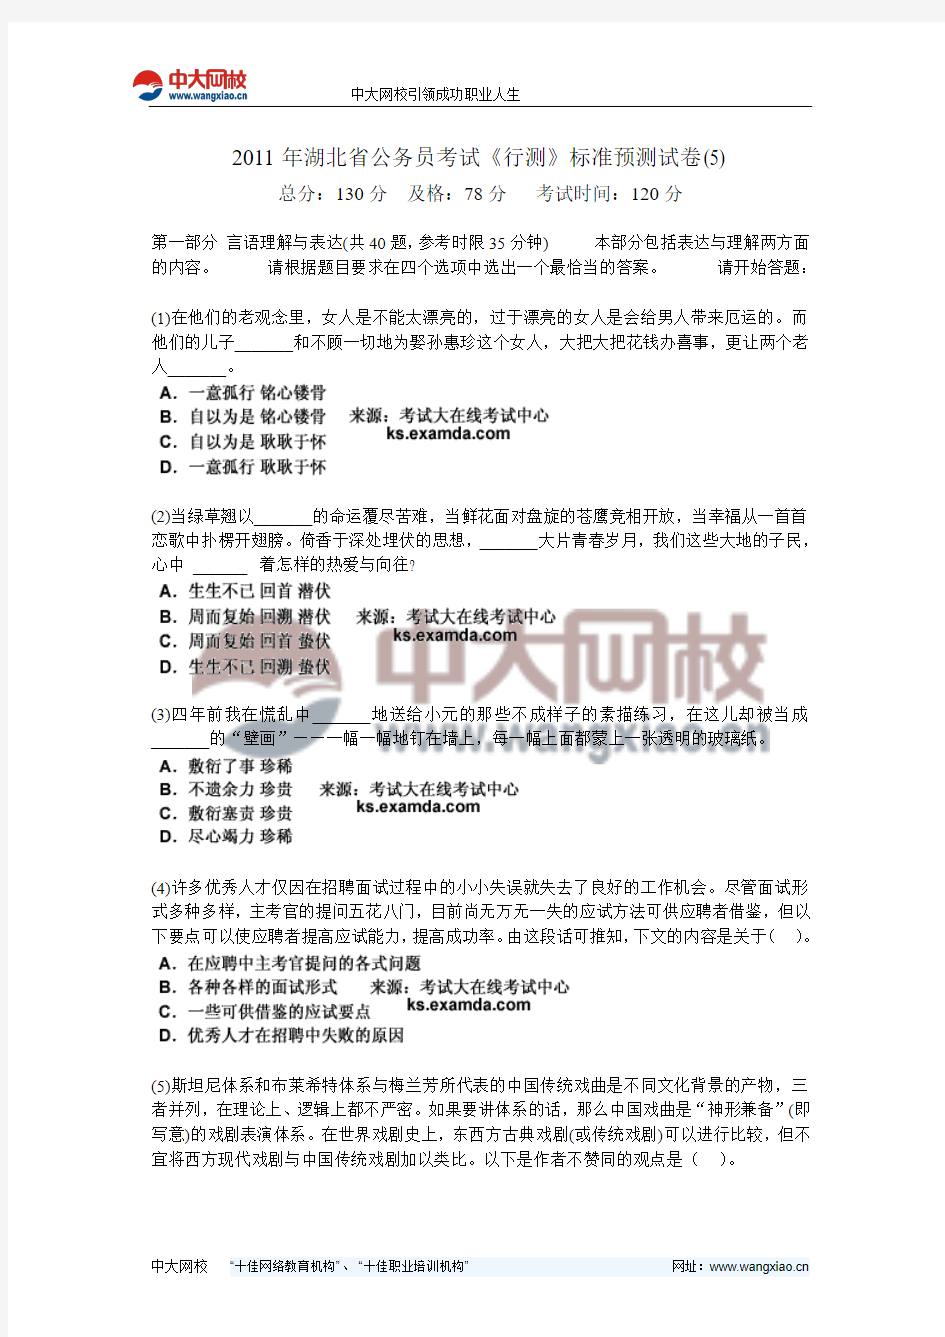 2011年湖北省公务员考试《行测》标准预测试卷(5)-中大网校